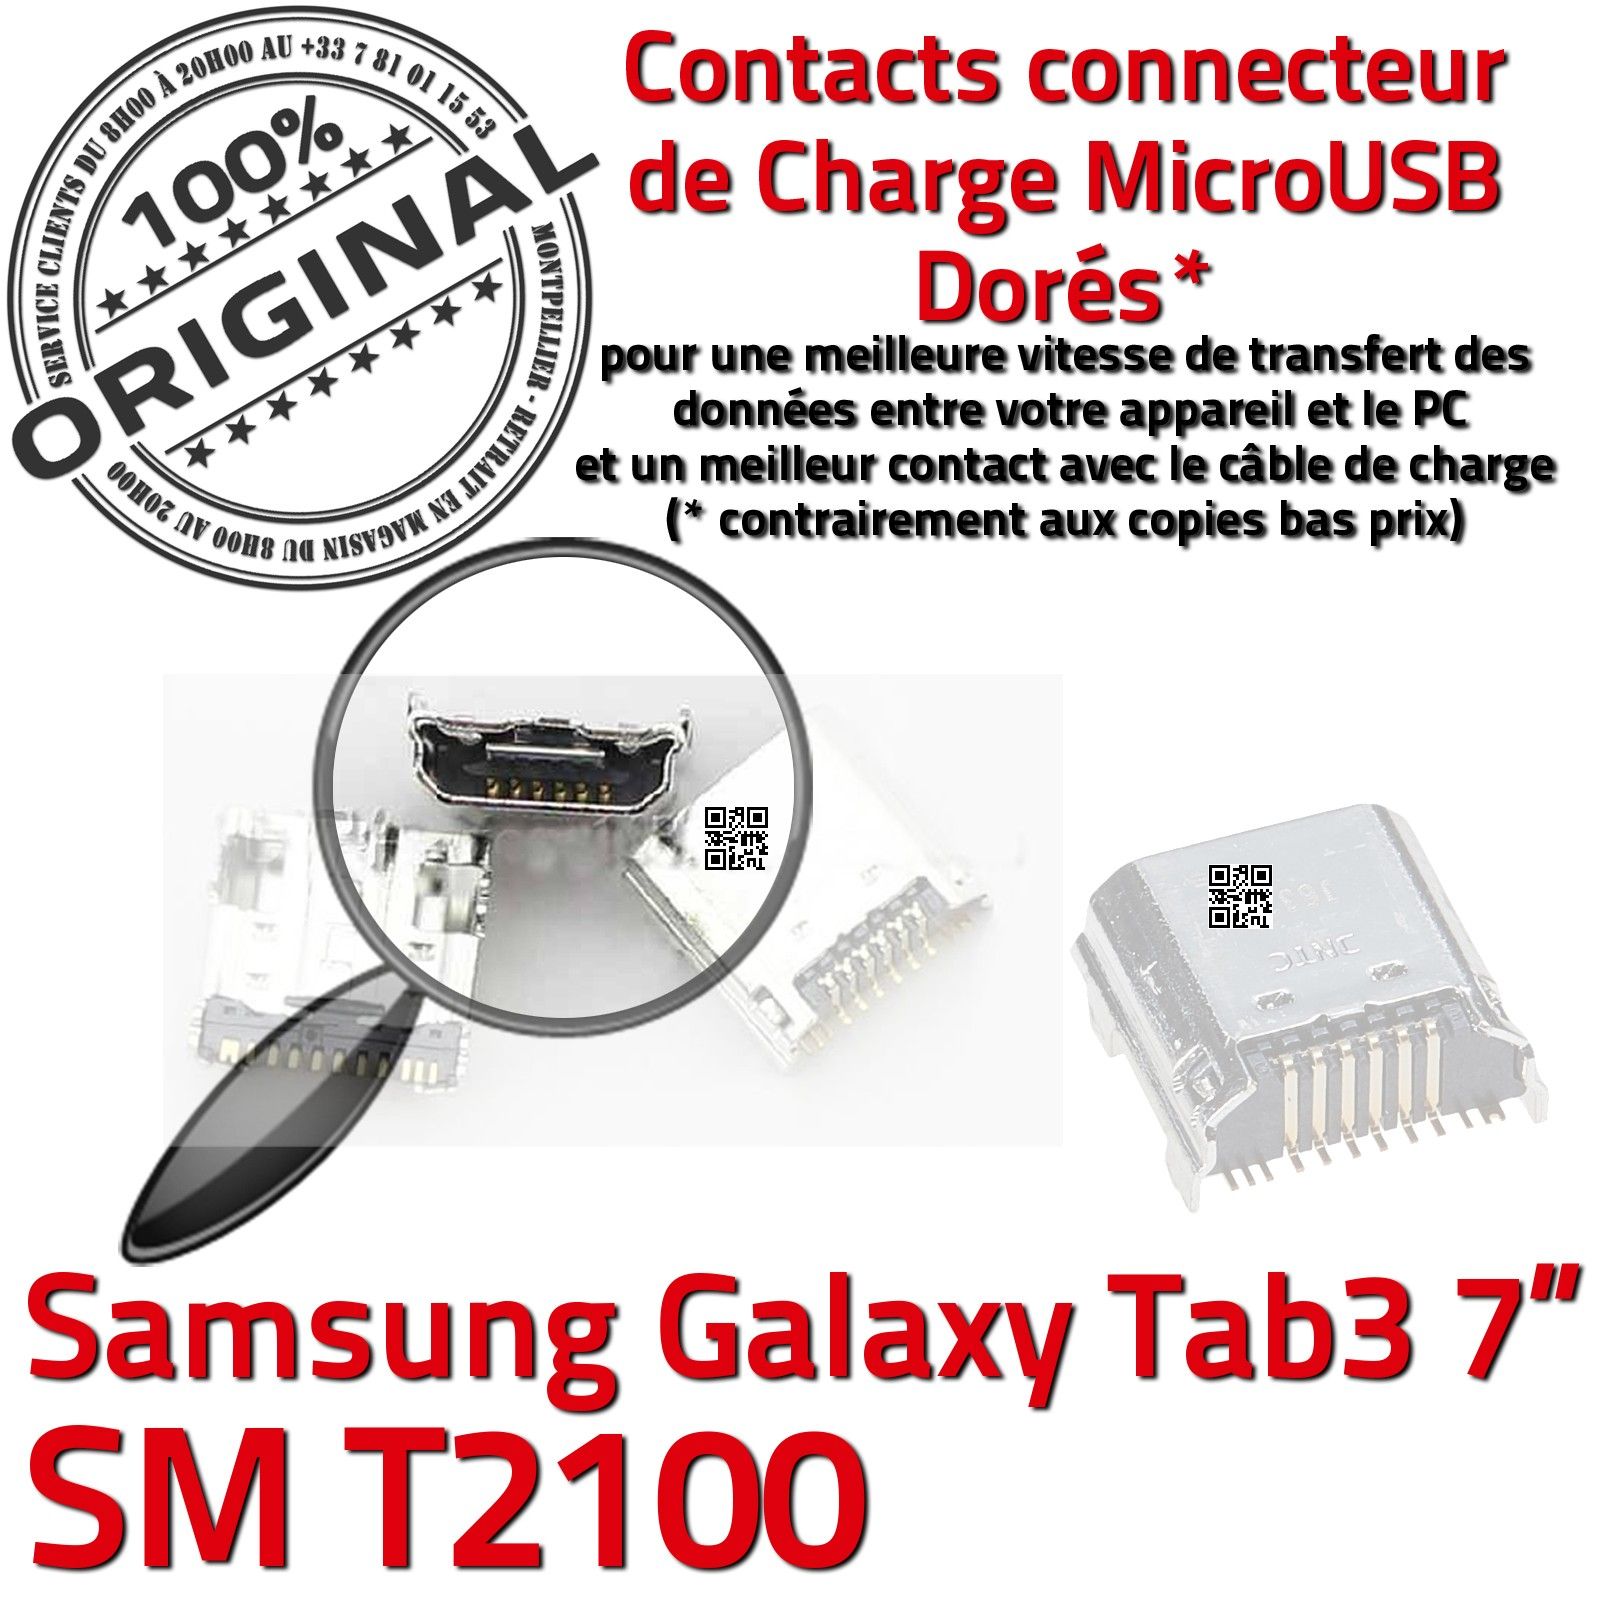 Samsung Galaxy TAB3 SM-T113 Prise de charge MicroUSB Qualité ORIGINAL à  souder Pins Dorés Dock Fiche Connector Chargeur SLOT